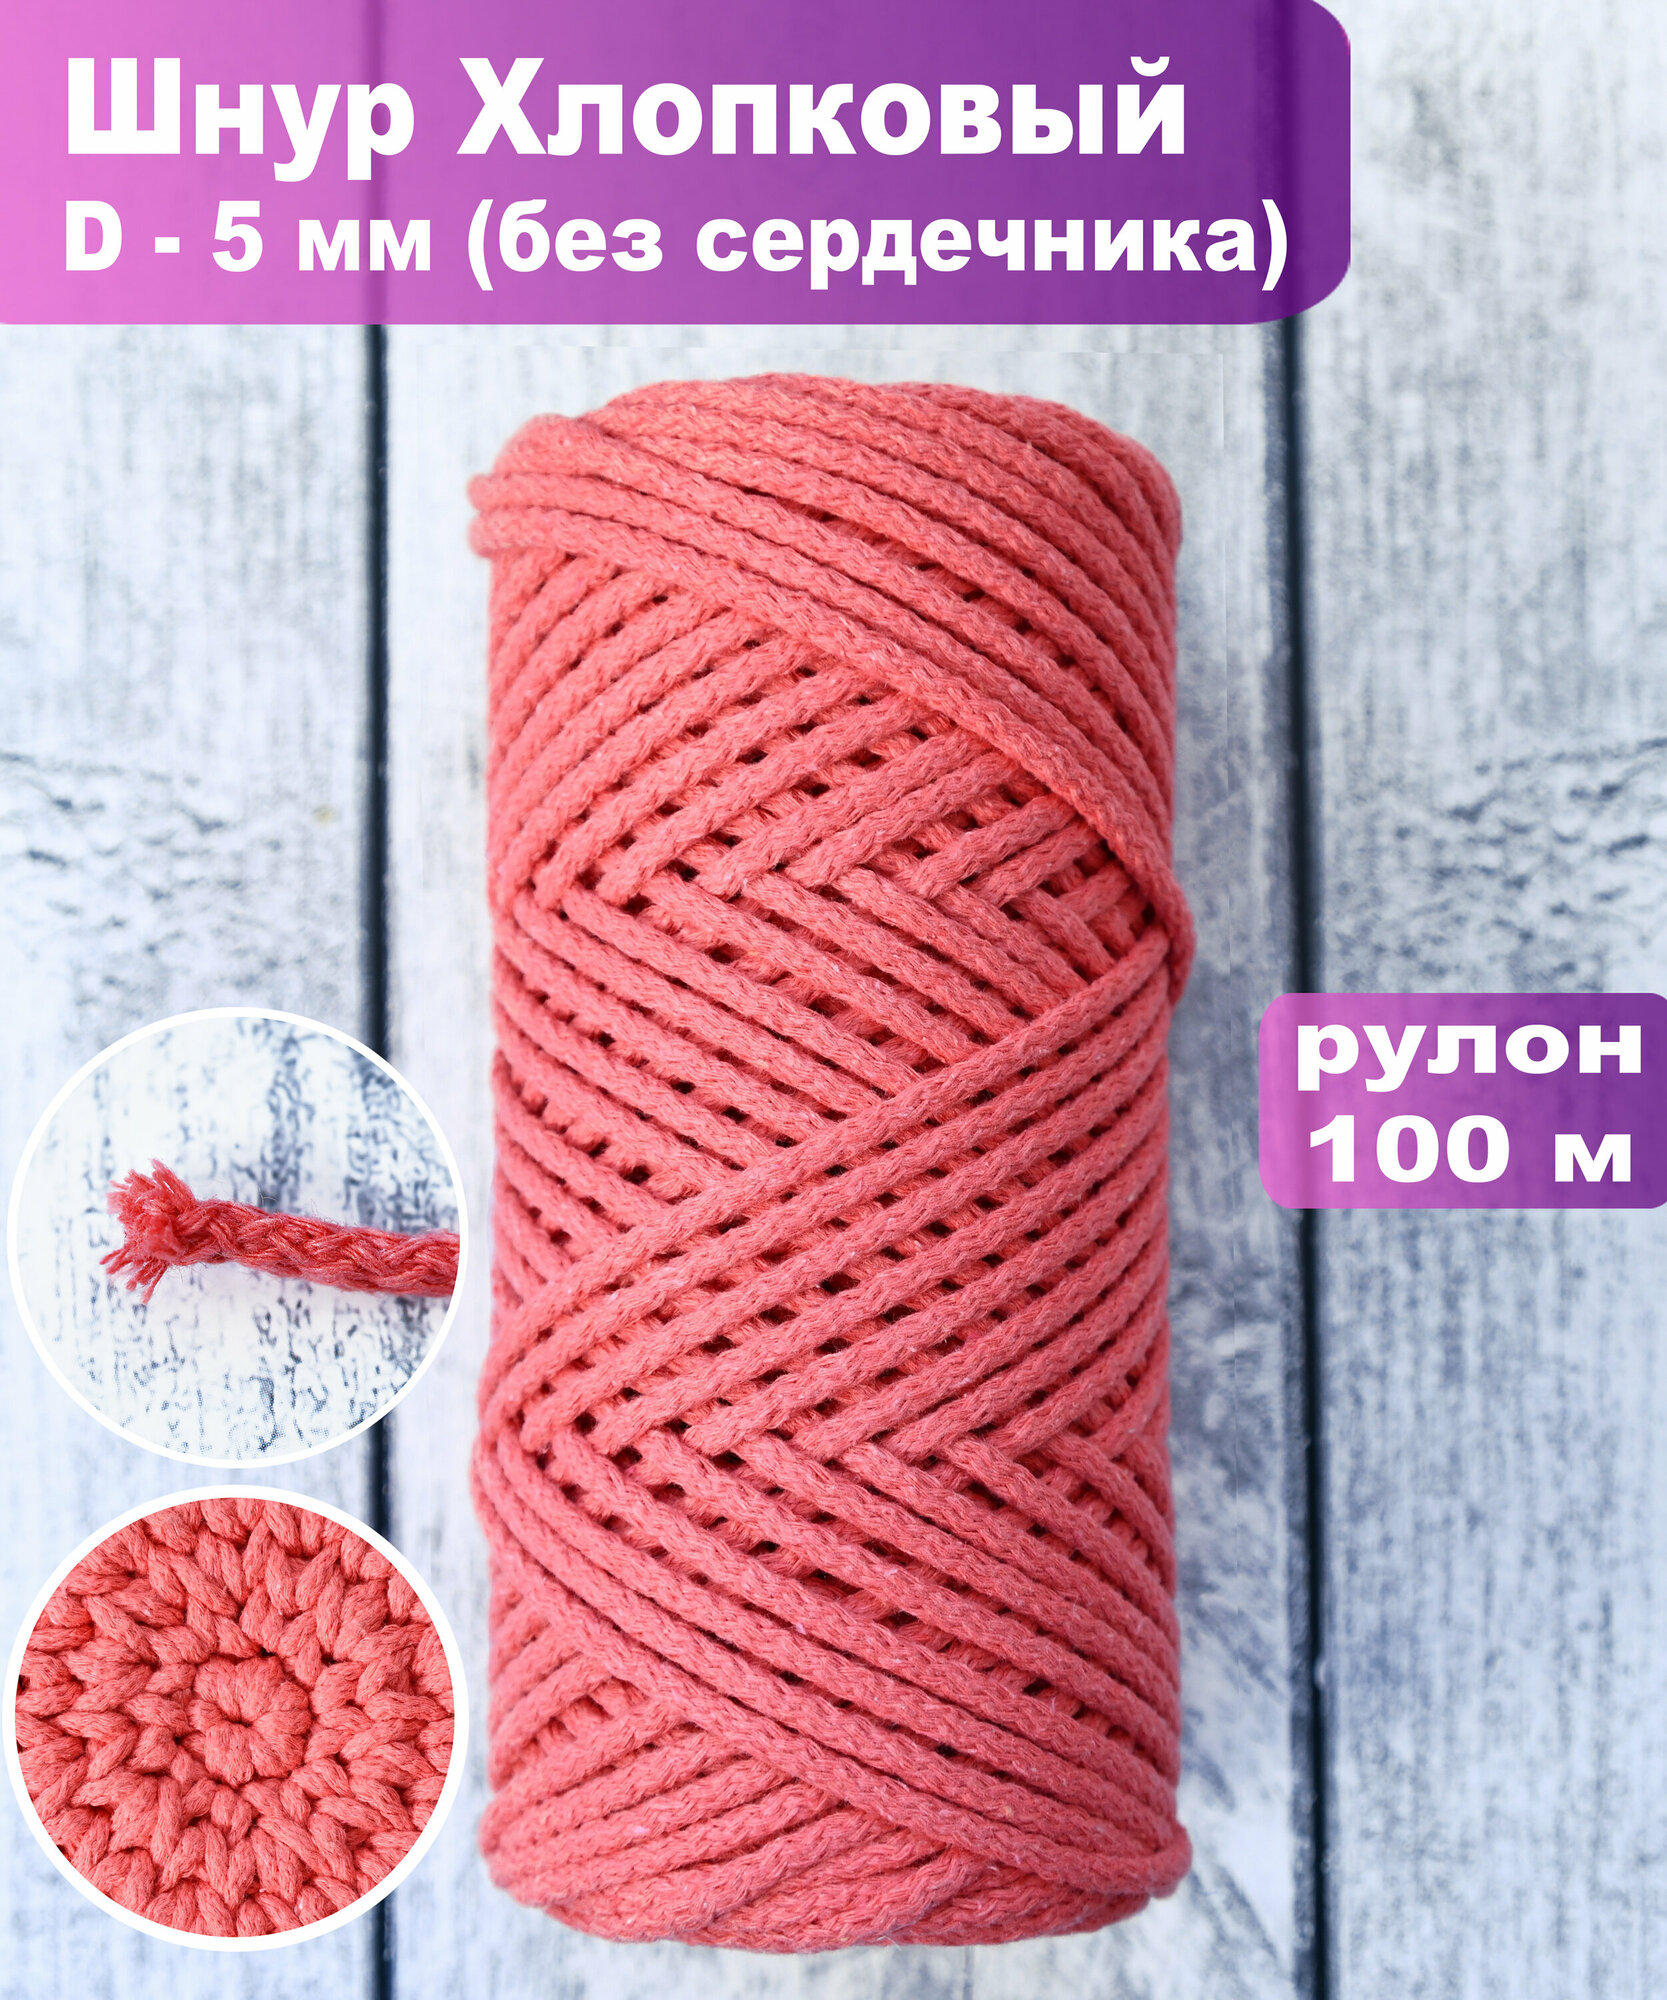 Шнур хлопковый 5 мм без сердечника для рукоделия розовый